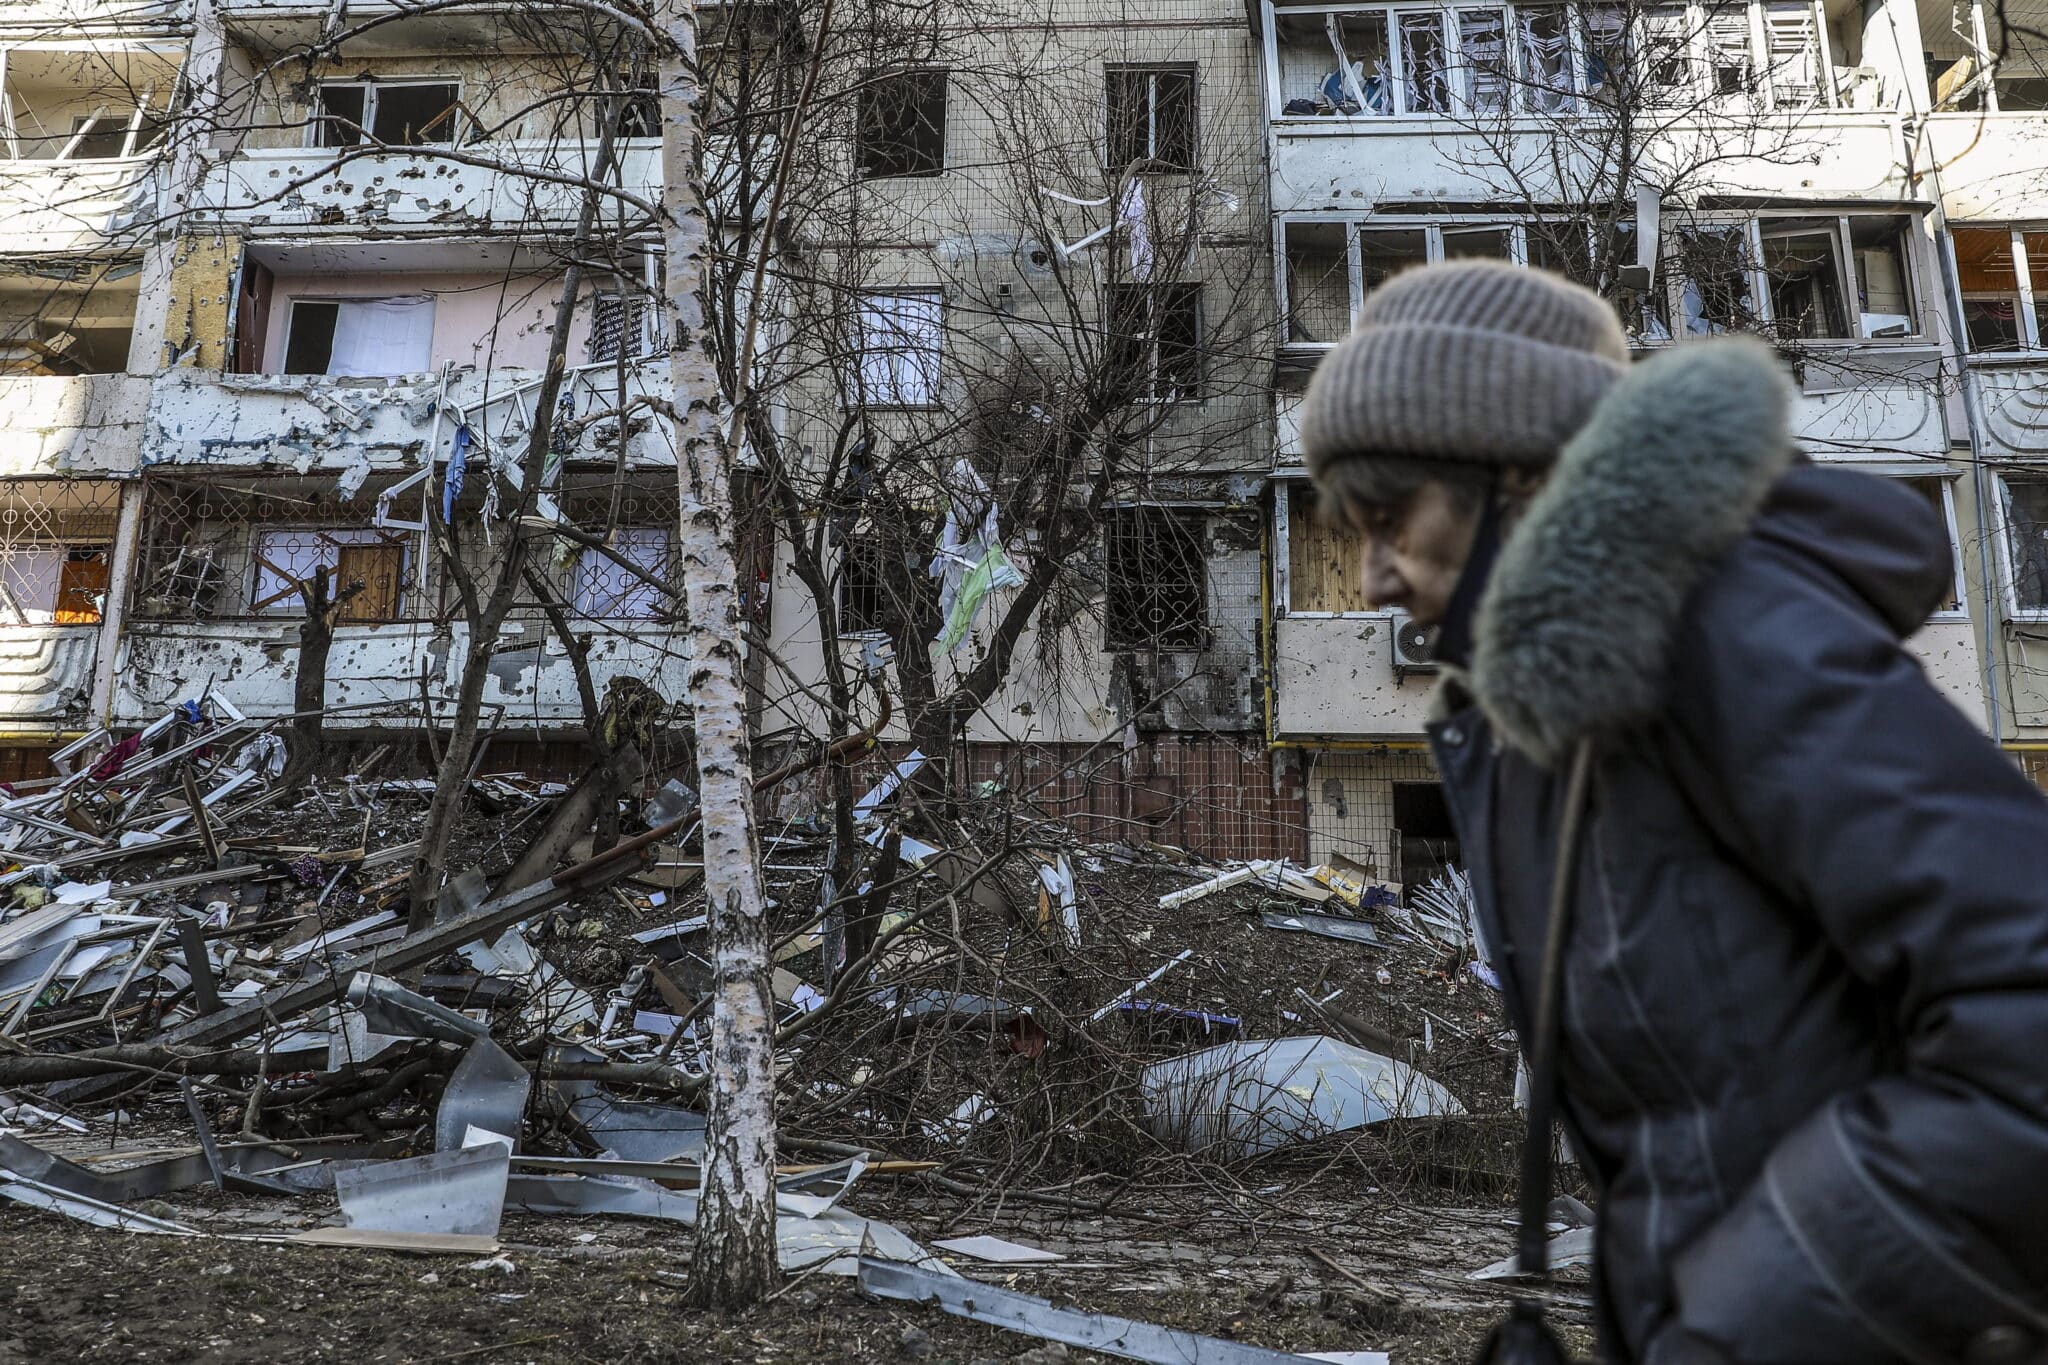 Una mujer pasa junto a los escombros de un edificio dañado por los bombardeos en Kiev.